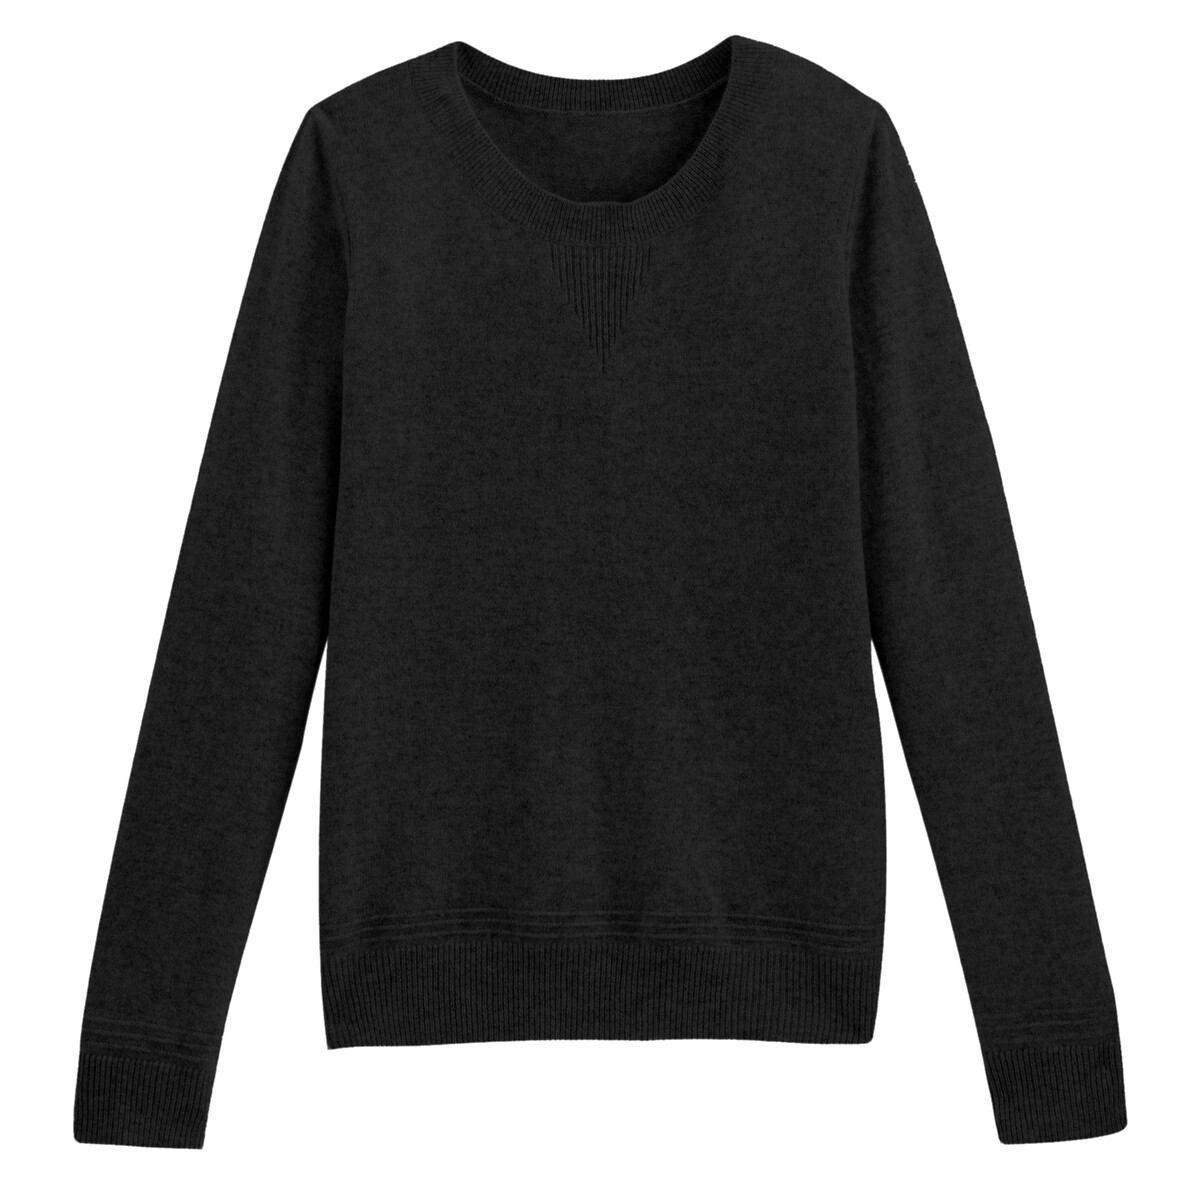 Пуловер La Redoute С круглым вырезом из кашемира XXL черный, размер XXL - фото 5